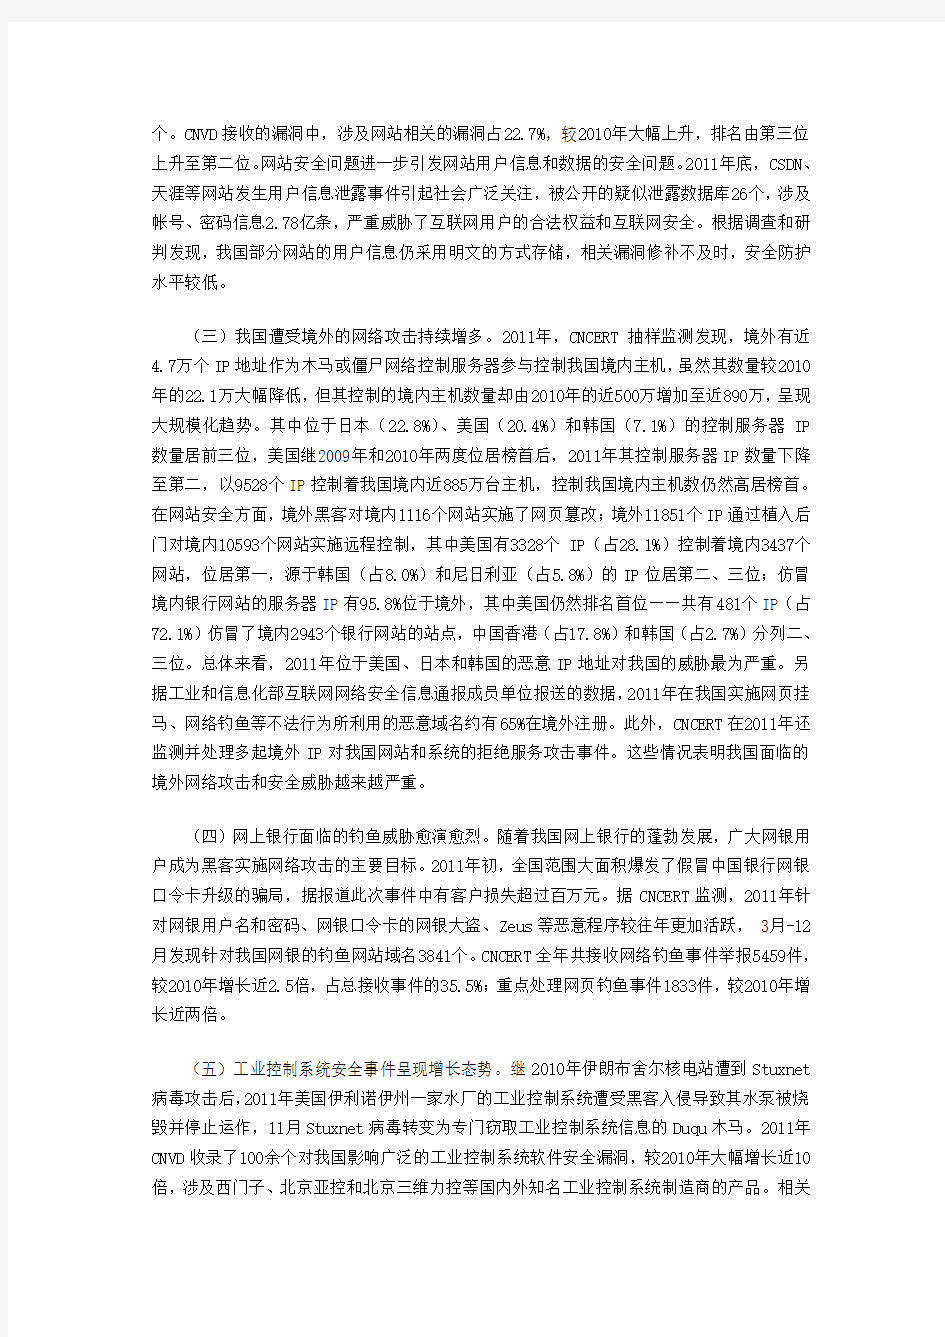 《2011年中国互联网网络安全态势报告》